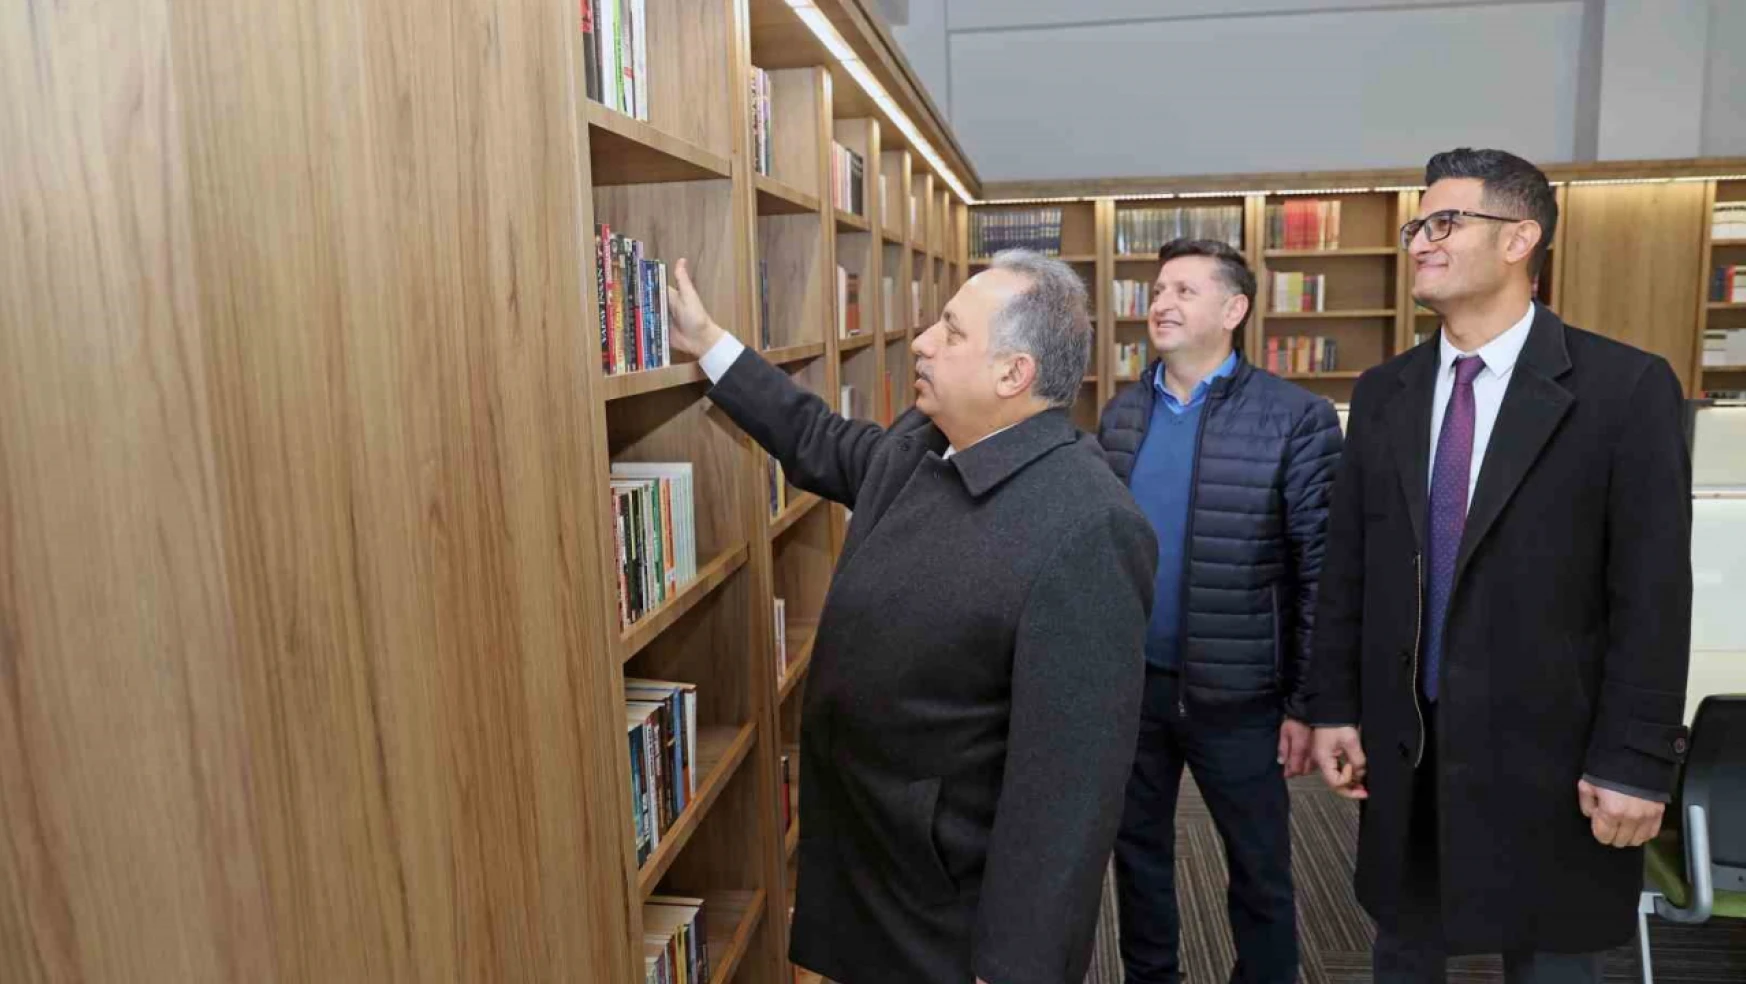 Talas Mehmet Karamercan Kütüphanesi'nde büyük gün